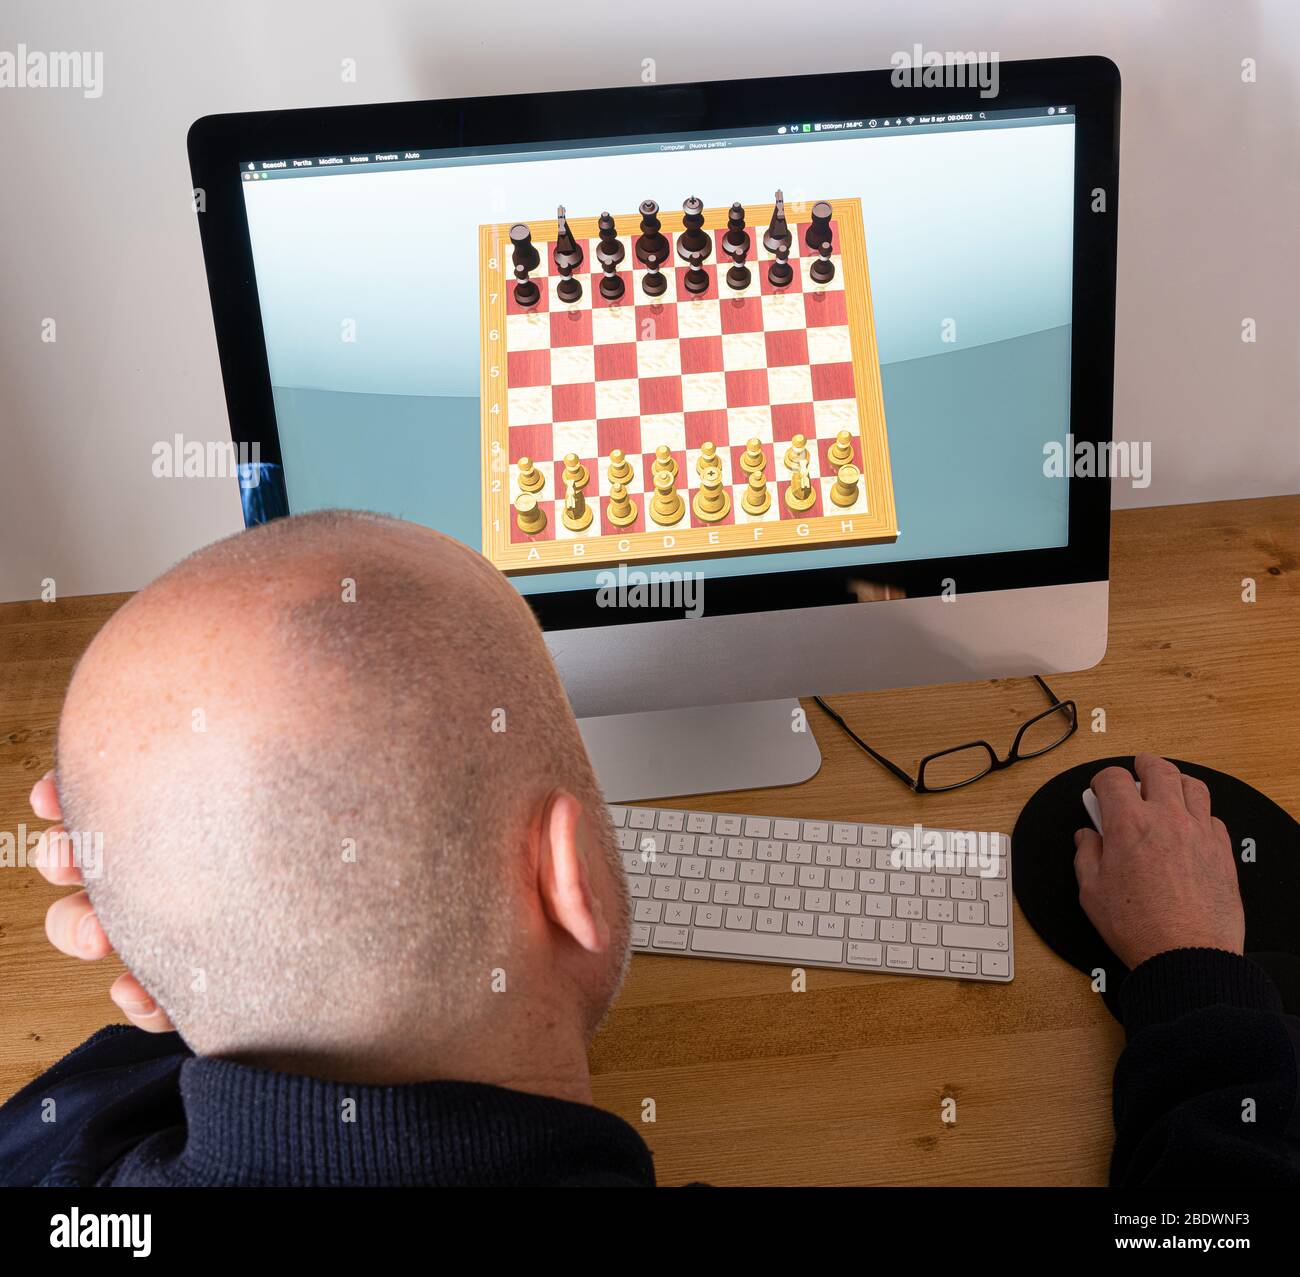 jouer aux échecs sur l'ordinateur pendant la quarantaine du coronavirus Banque D'Images